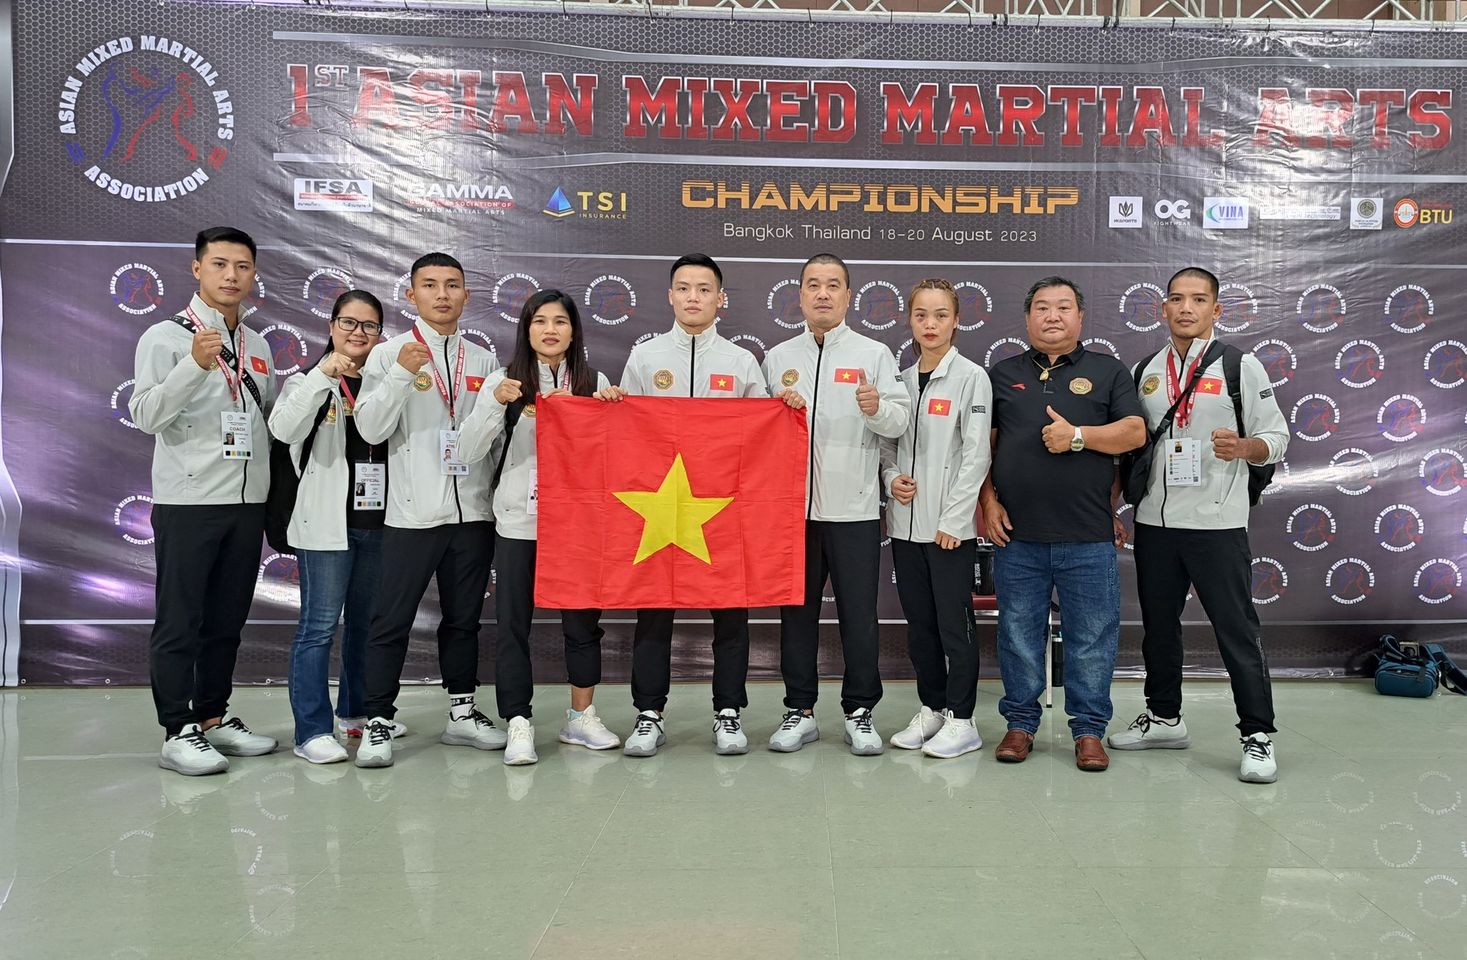 Võ sĩ Nguyễn Tiến Long giành HCV tại giải vô địch MMA châu Á - Ảnh 1.